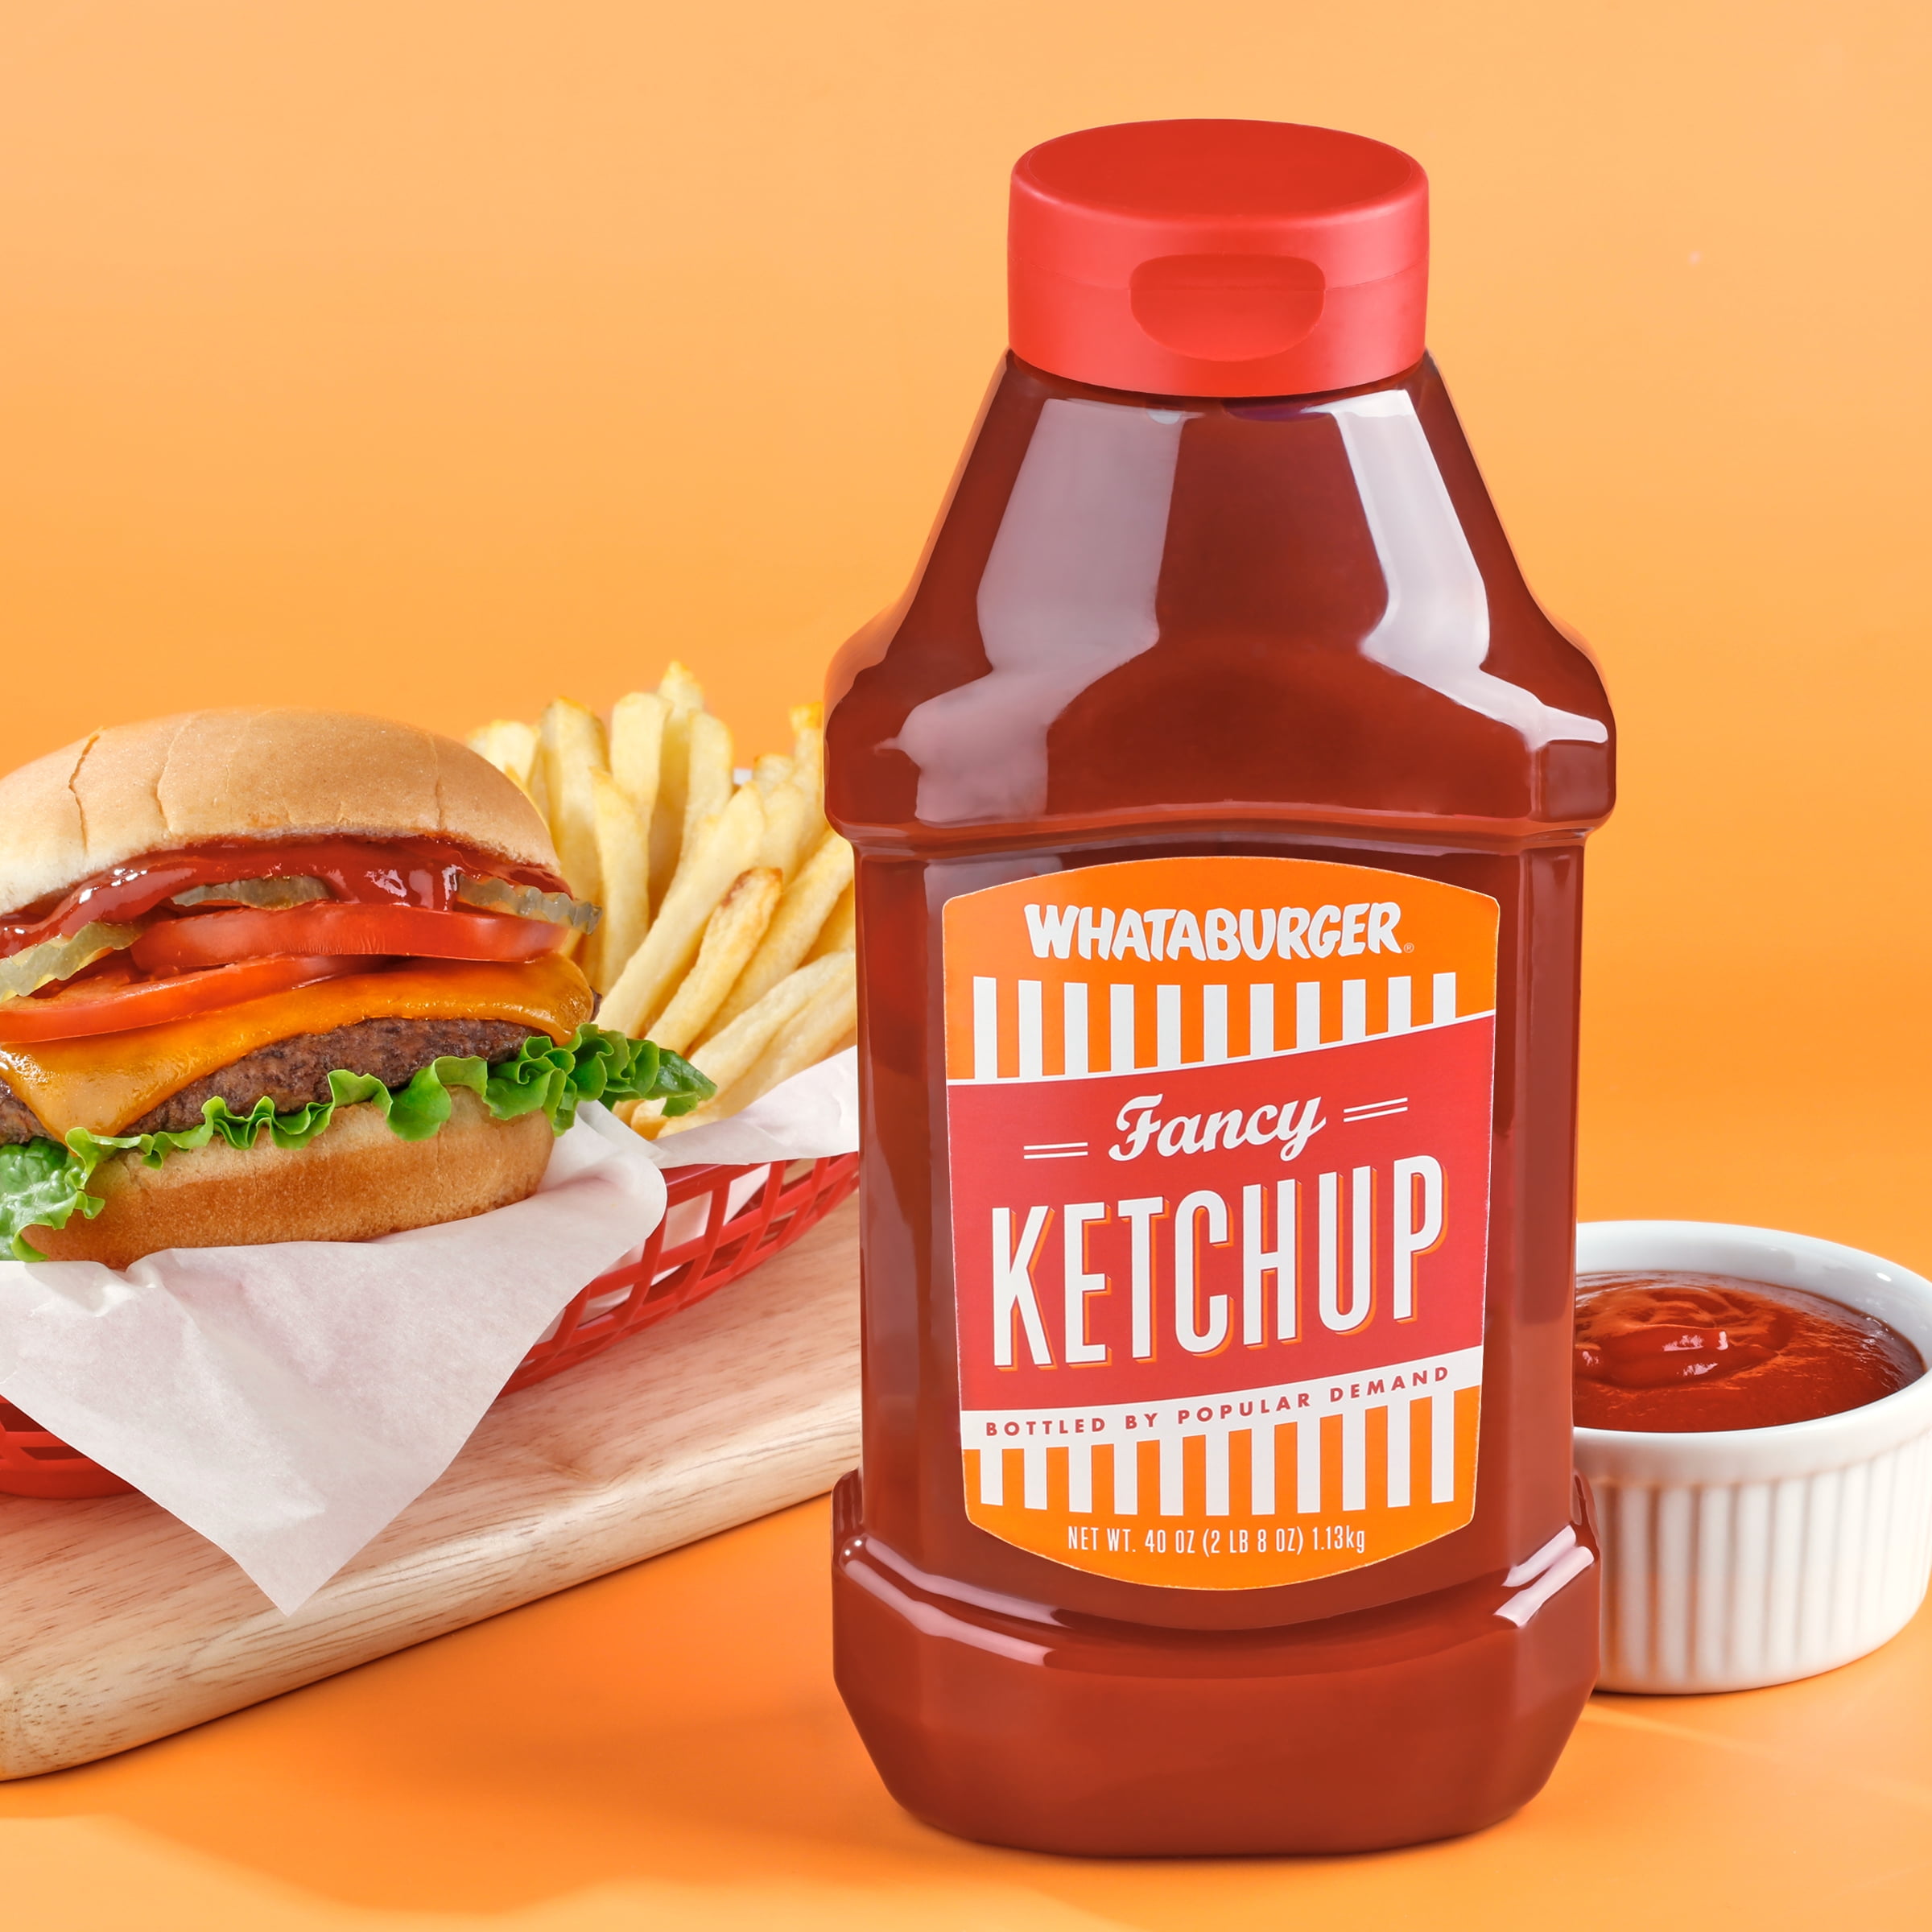 Whataburger Ketchup, Spicy - 40 oz